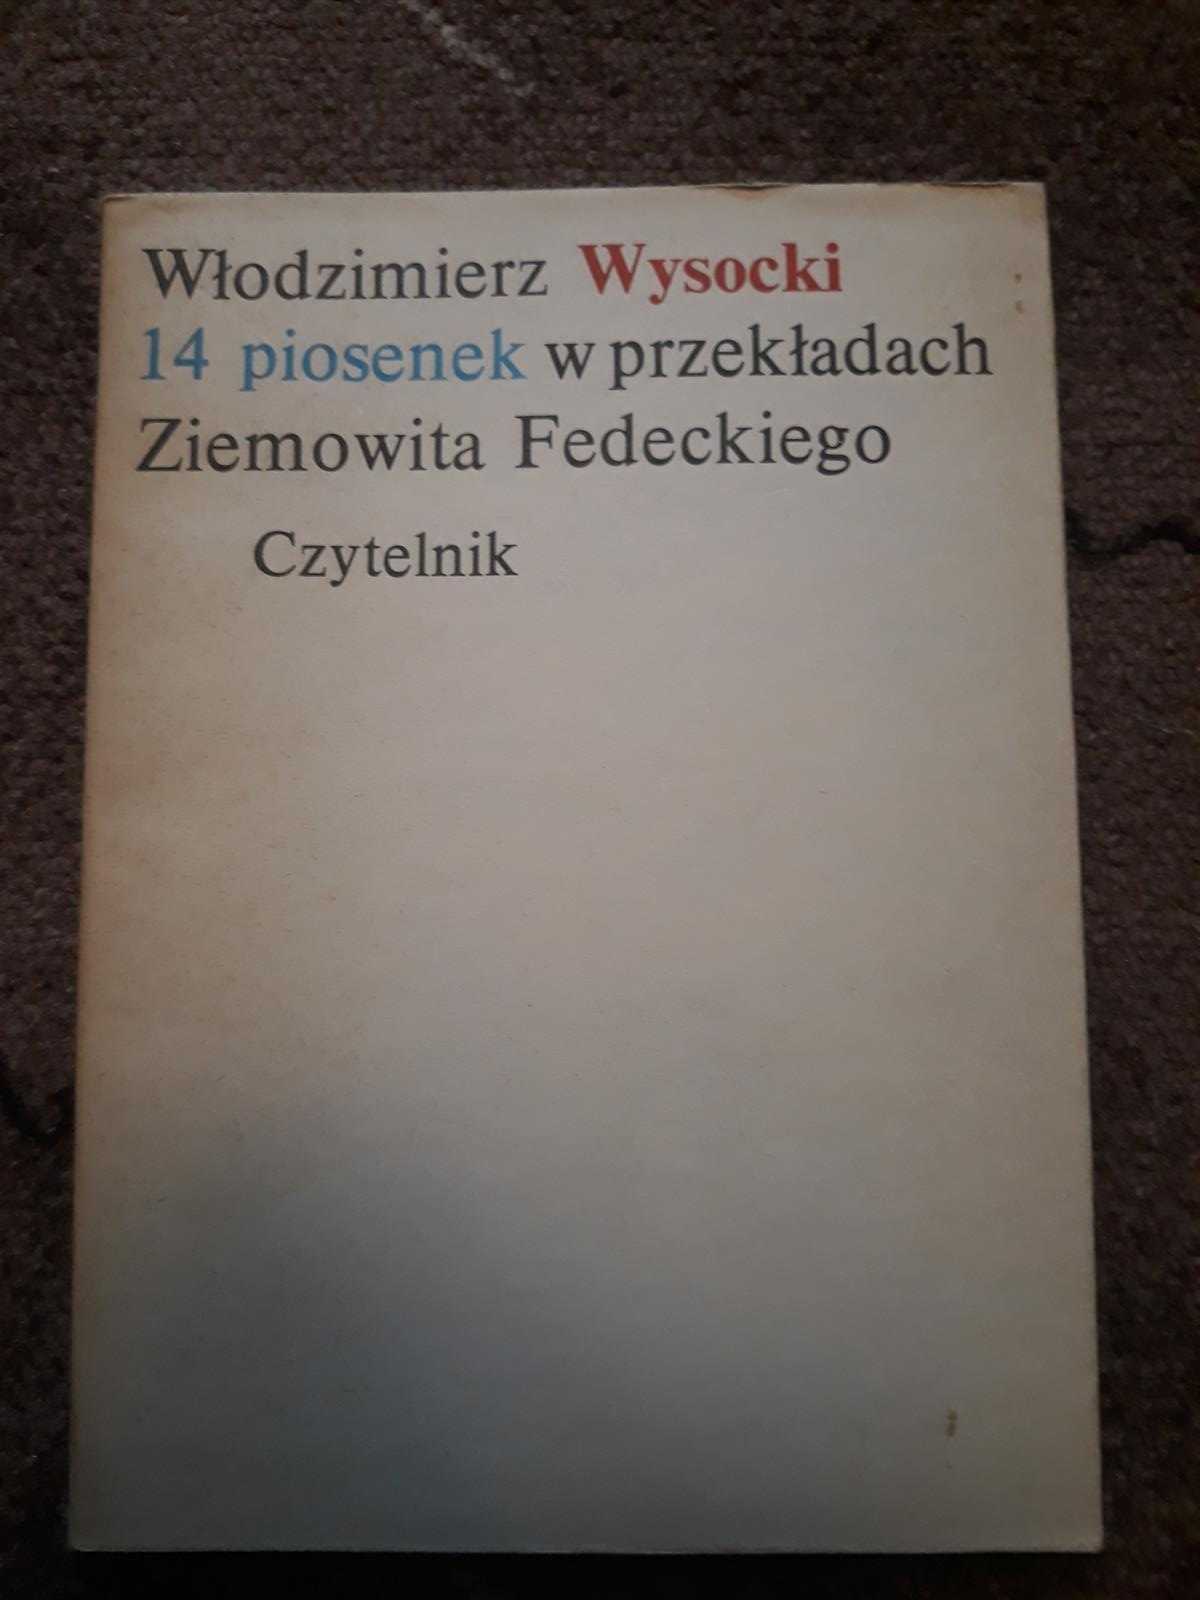 14 piosenek w przekładach Ziemowita Fedeckiego - Wysocki